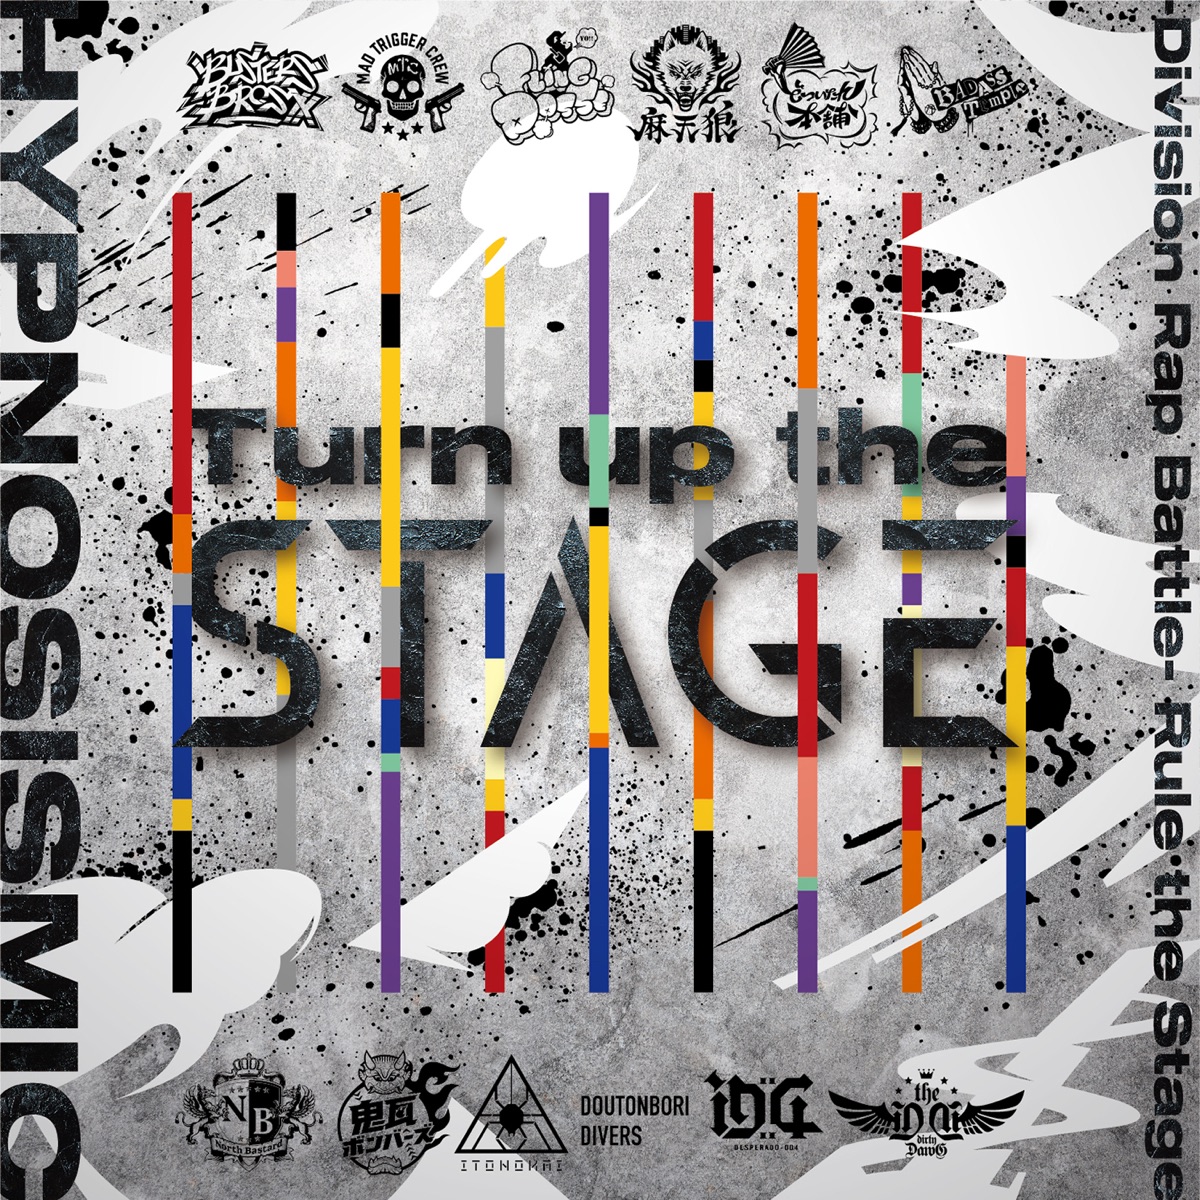 『ヒプノシスマイク -D.R.B- Rule the Stage (どついたれ本舗) - オオサカ24金マジック』収録の『Turn up the Stage』ジャケット